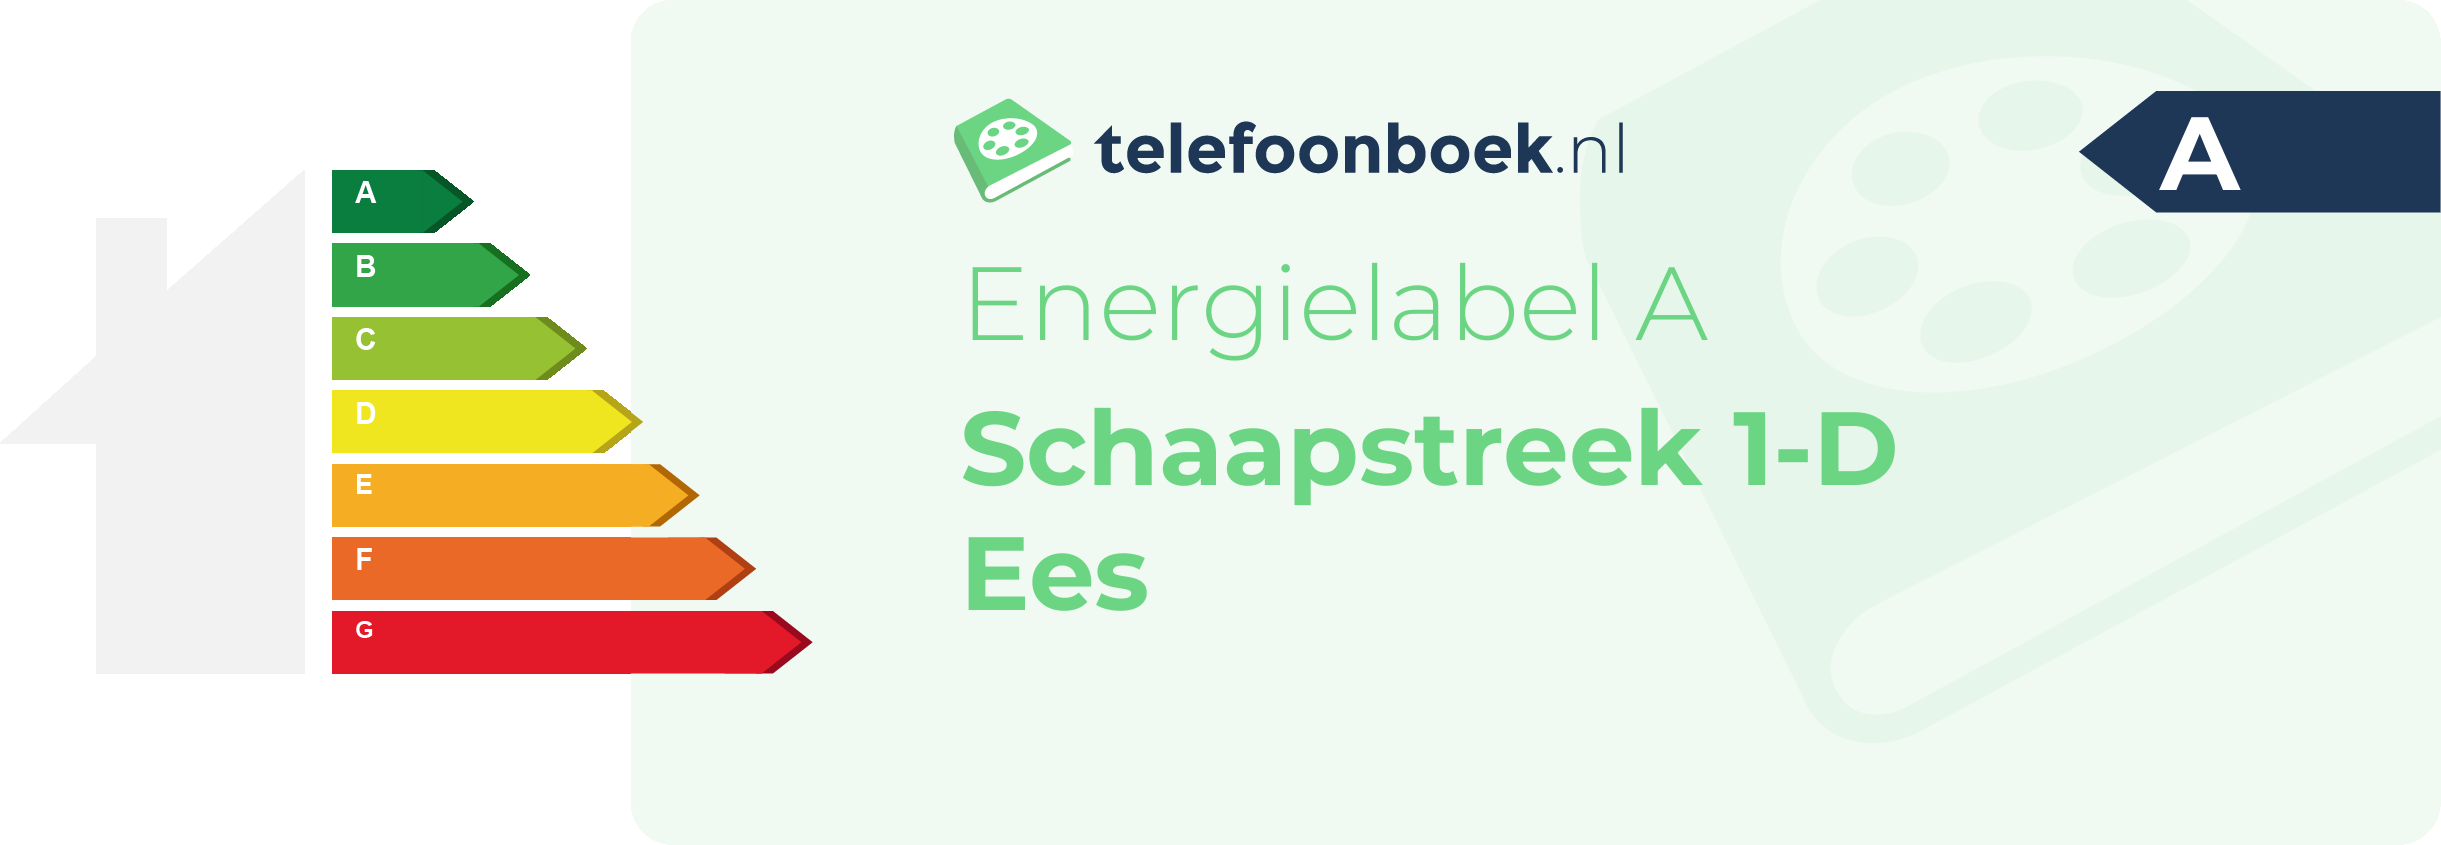 Energielabel Schaapstreek 1-D Ees